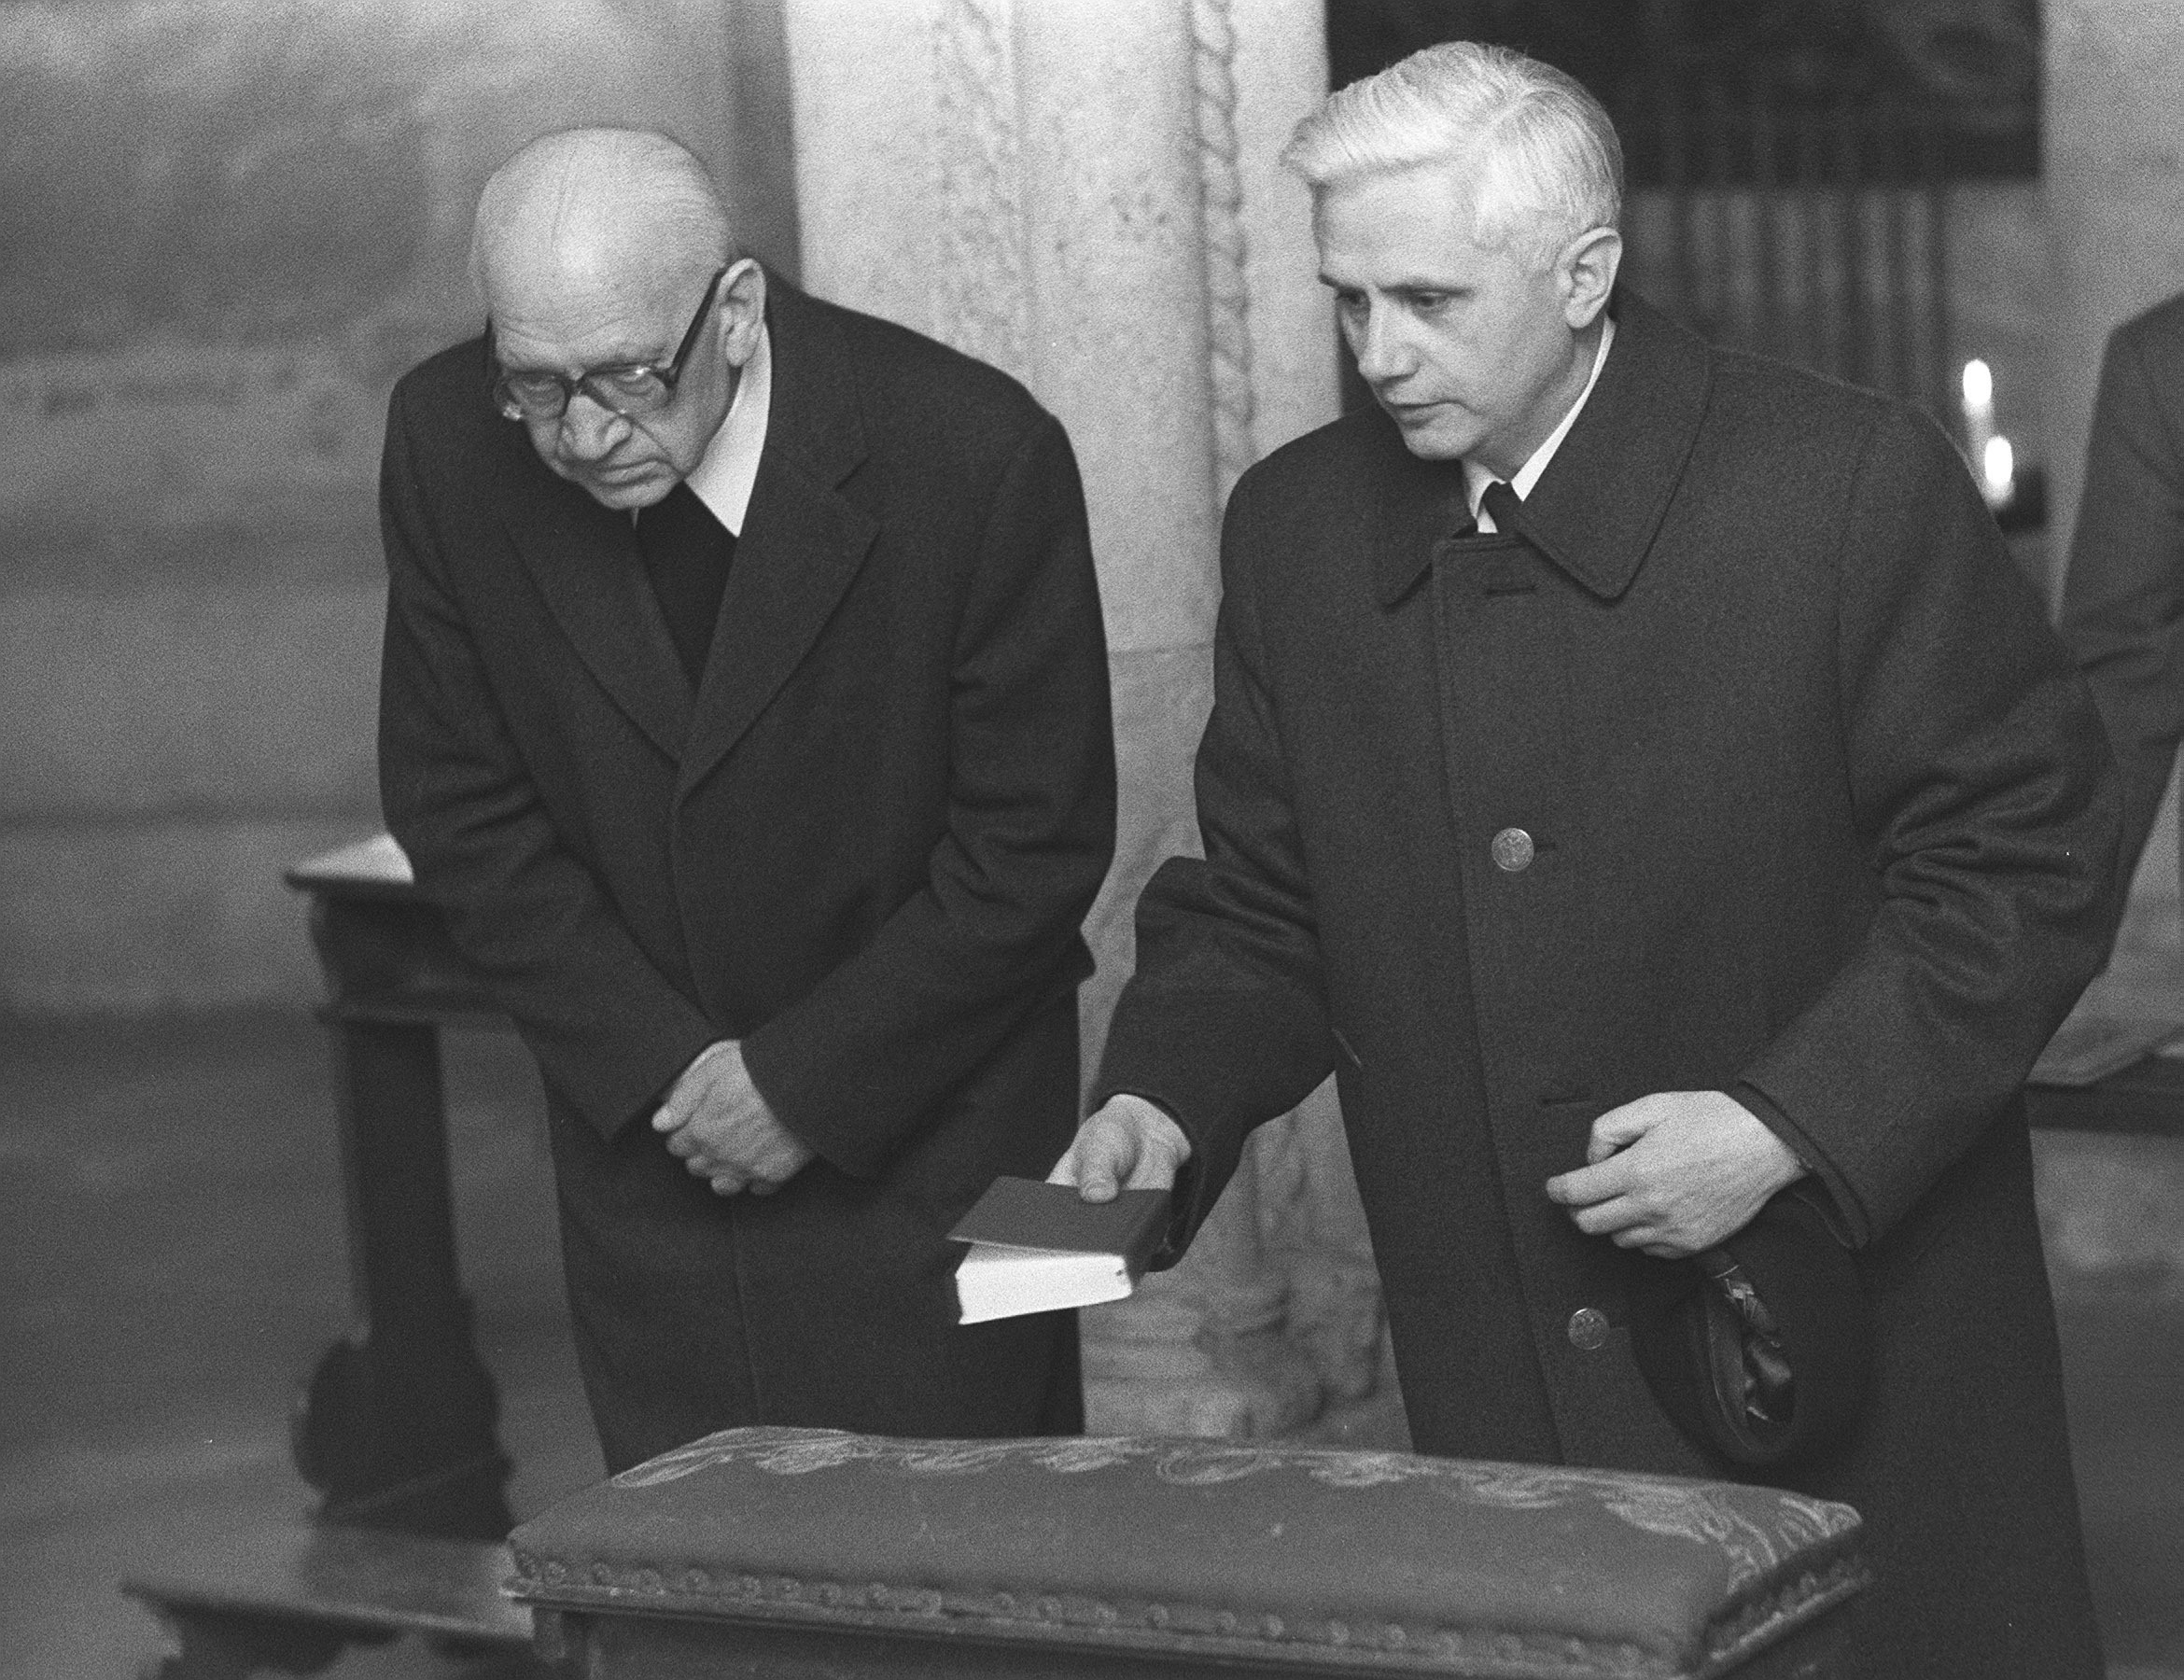 En esta imagen de archivo, Joseph Ratzinger (derecha), recién nombrado arzobispo de Múnich y Freising, reza con el obispo Erns Tewes en la cripta de la catedral de Freising, el 31 de marzo de 1977, en el sur de Alemania. Décadas más tarde, Ratzinger se convertiría en el papa Benedicto XVI (AP Foto/Dieter Endlicher, archivo)